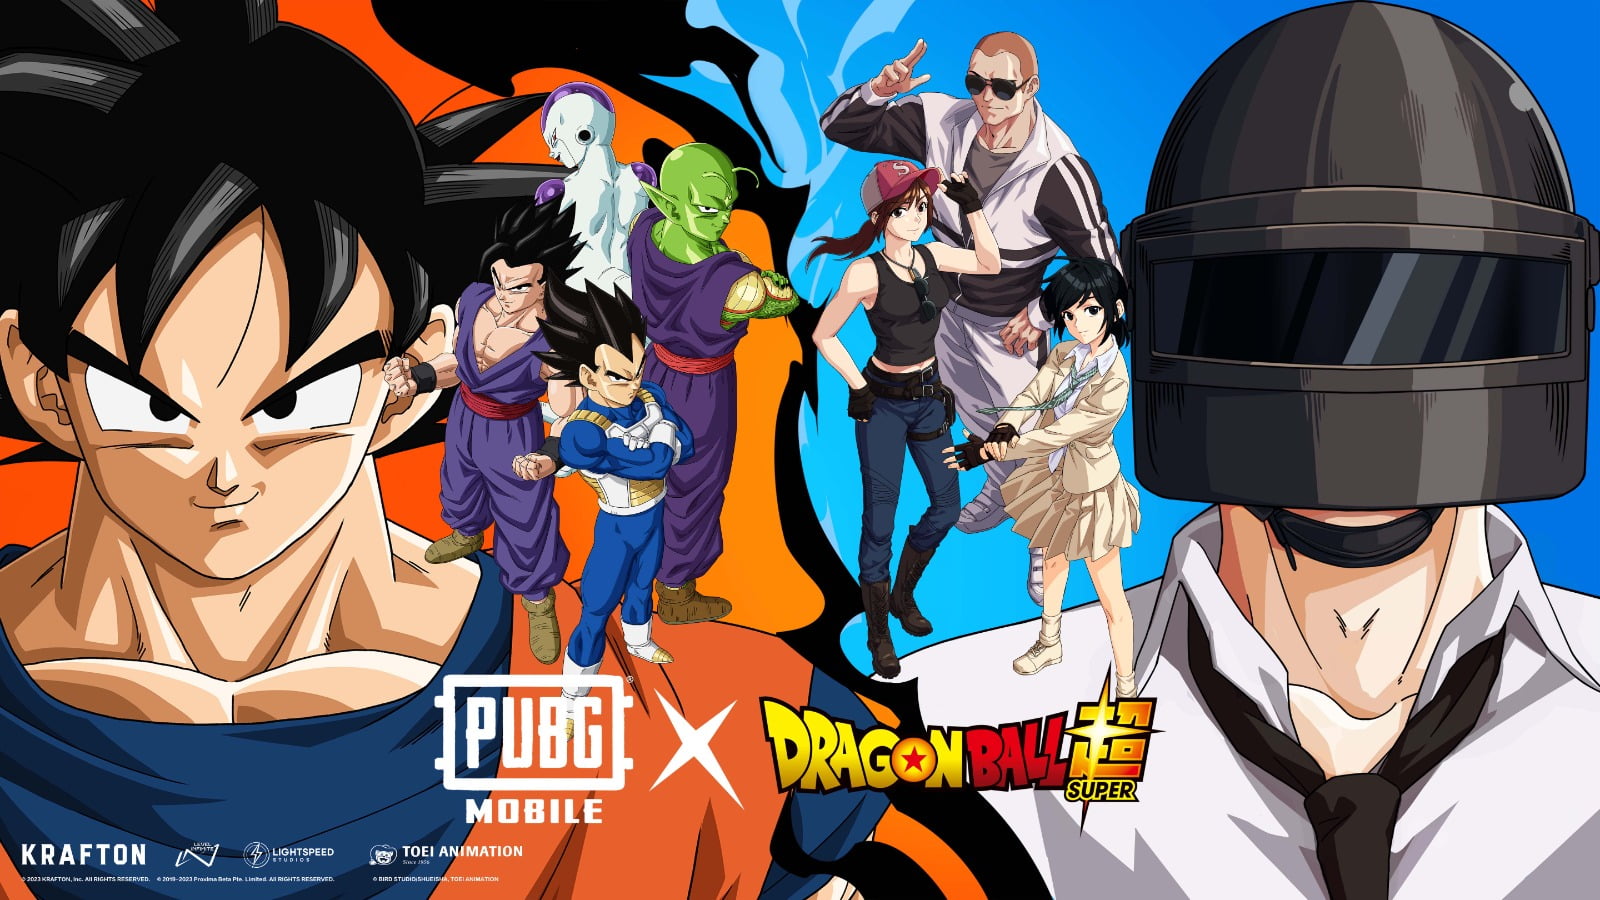 PUBG MOBILE x Dragon Ball Super Unleash Epic Collaboration in Version 2.7 Update